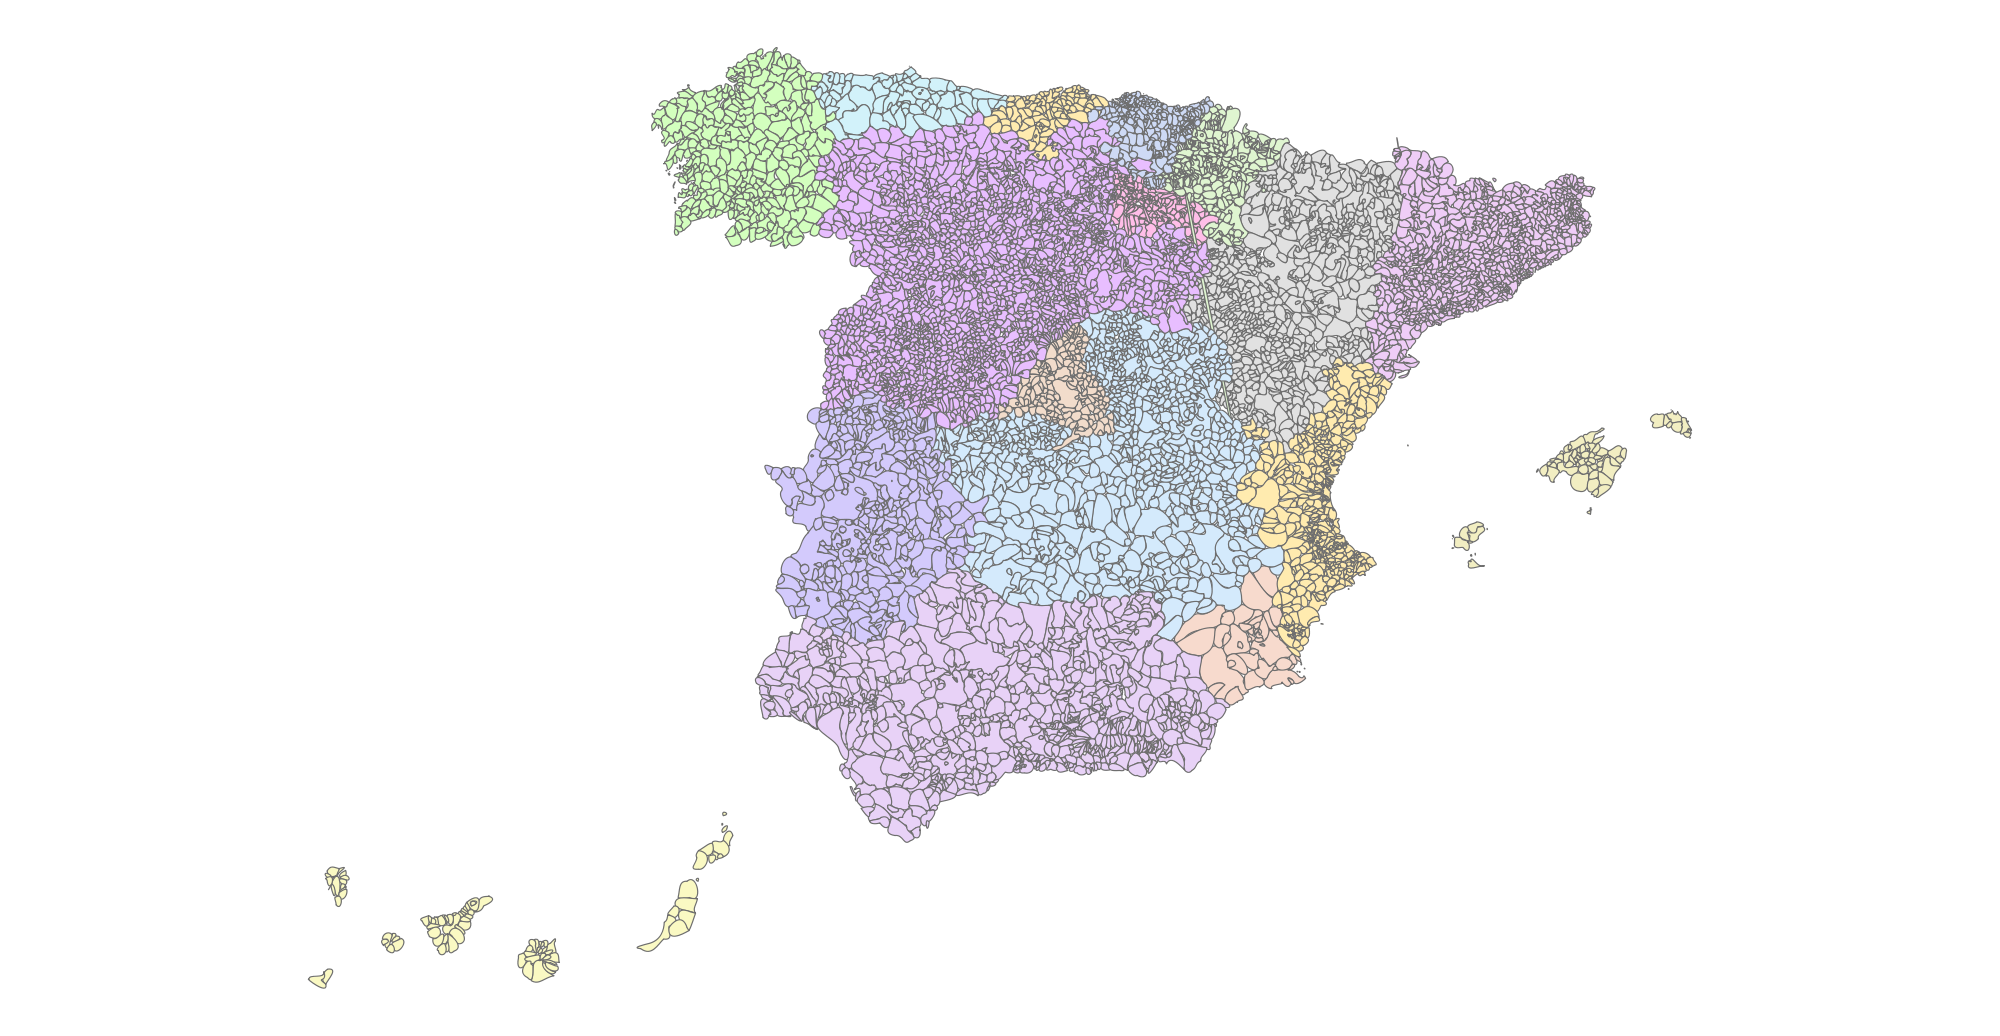 Mapa municipal mudo de España 2004